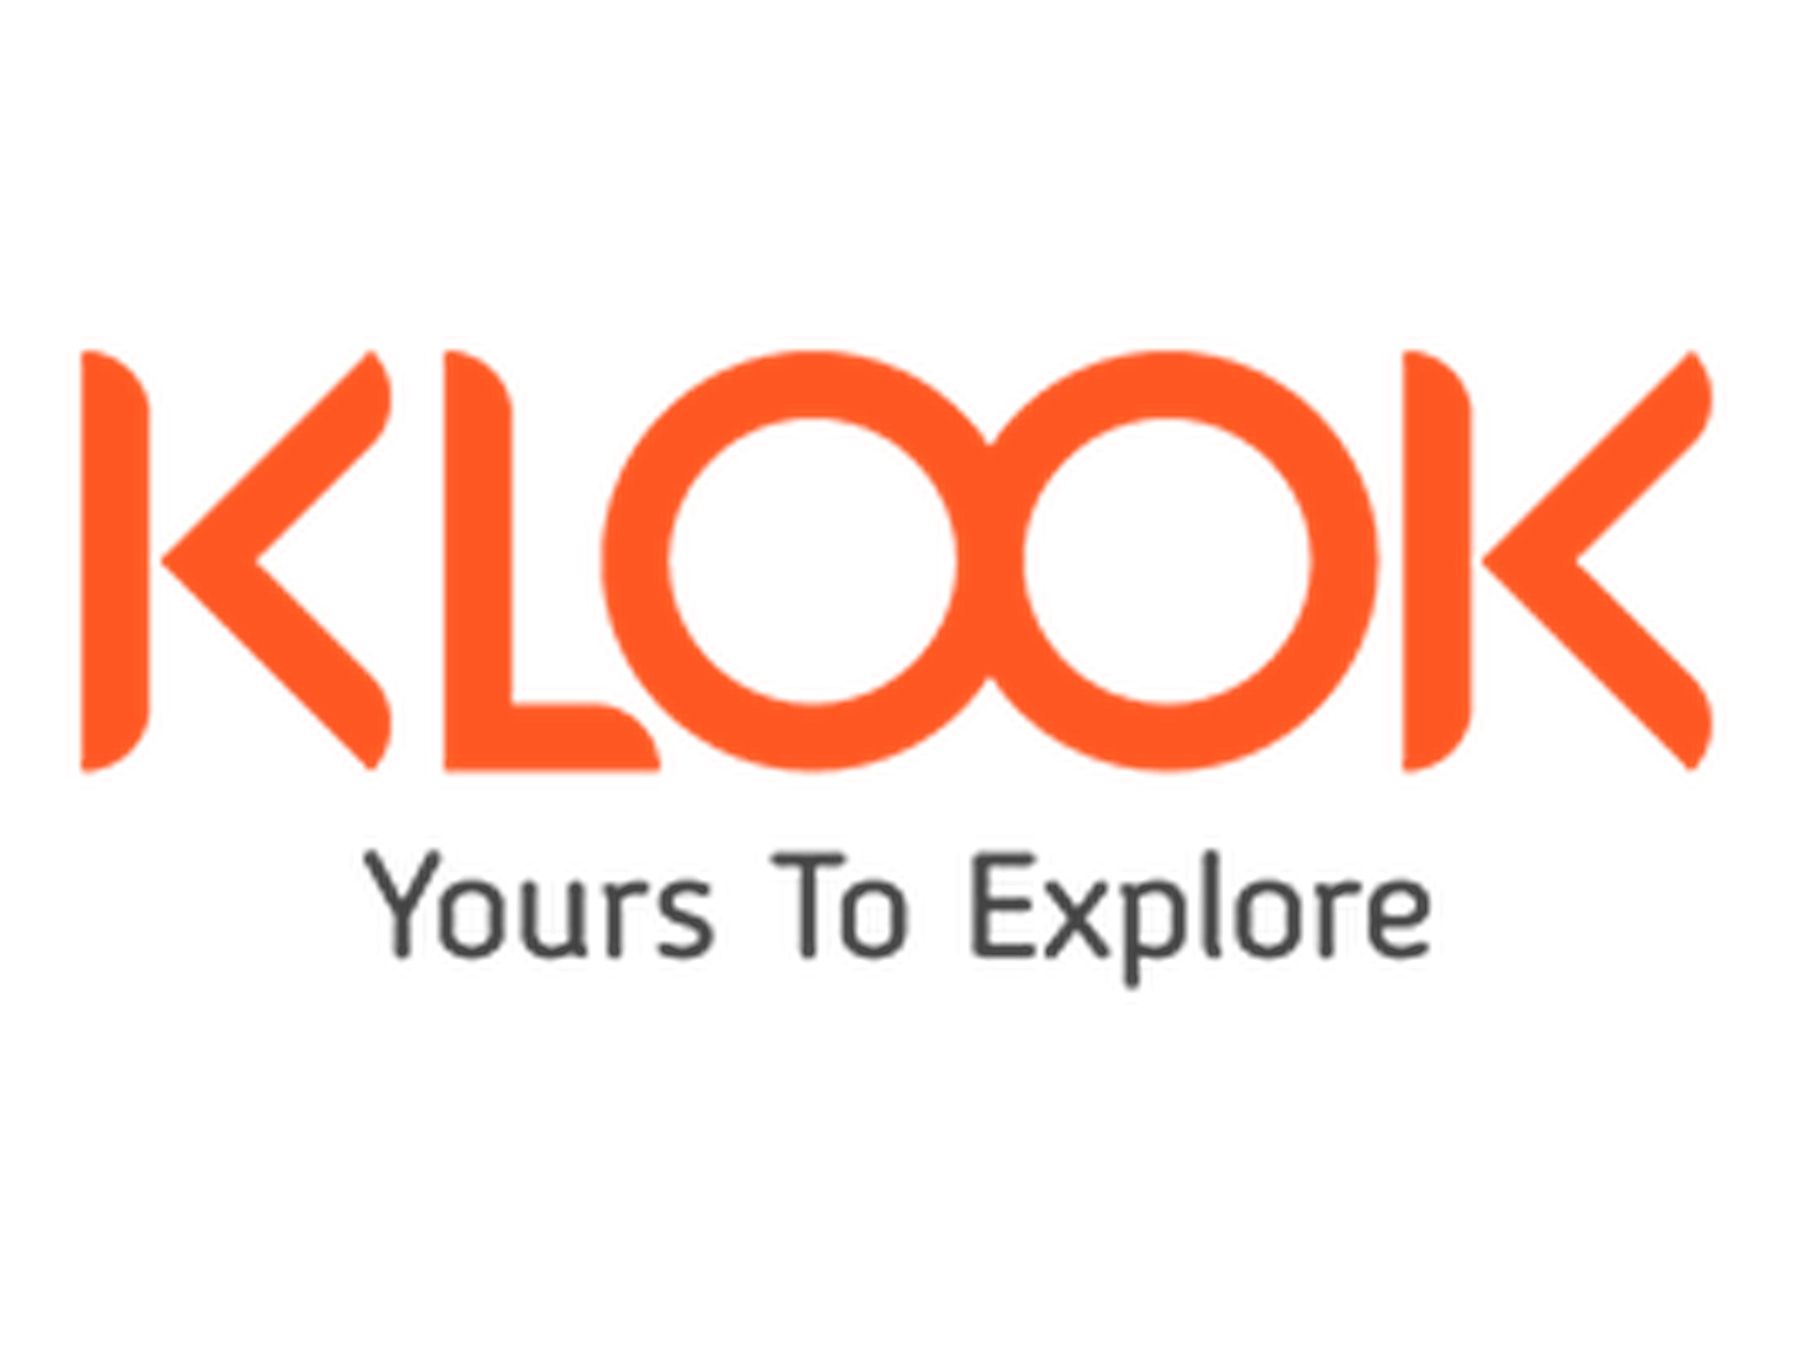 Klook Promo Code